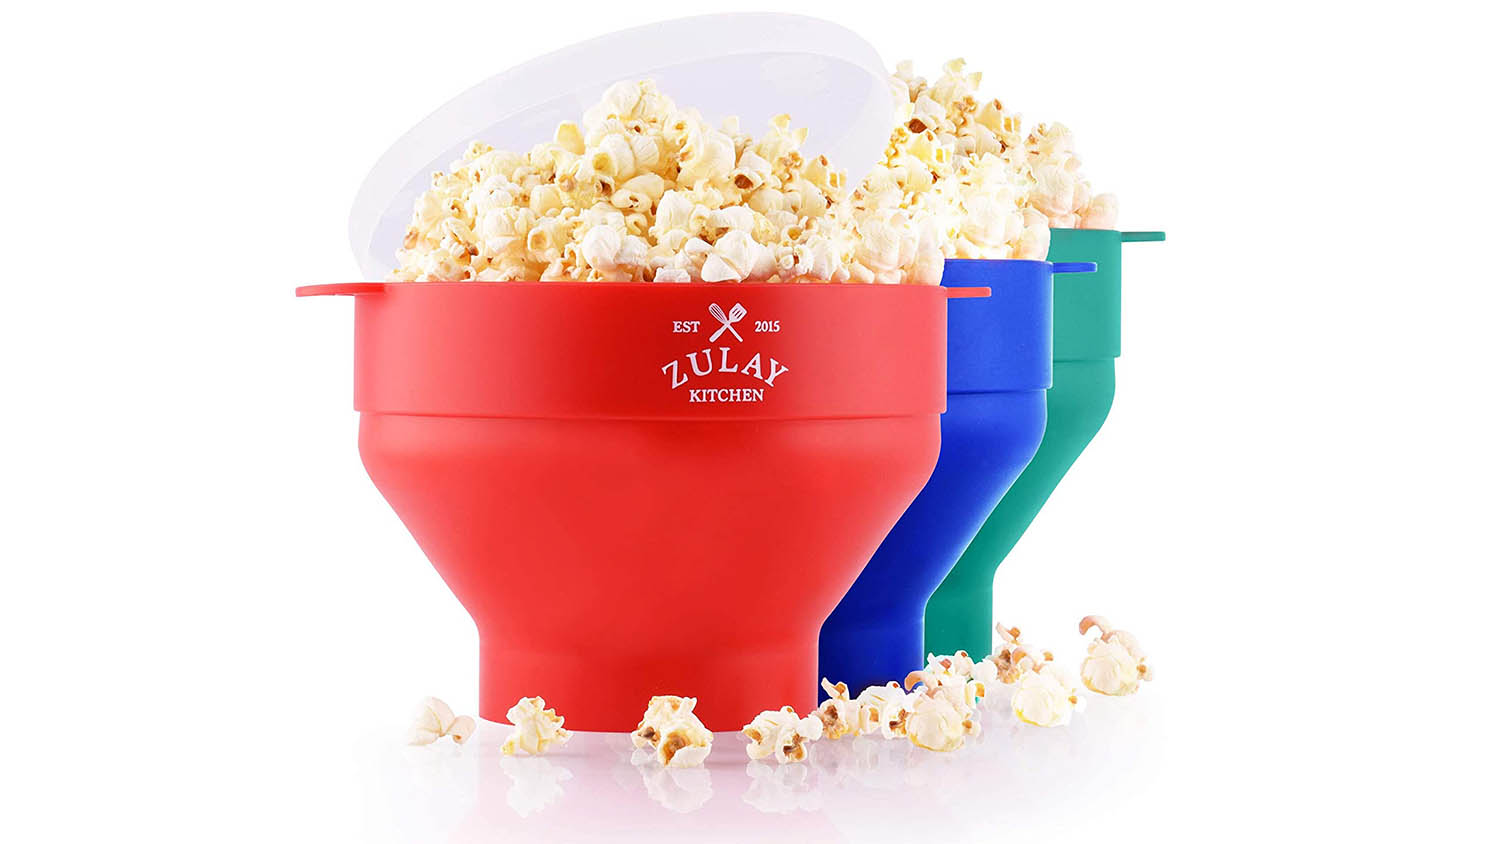 popcorn maker kitchen gadget